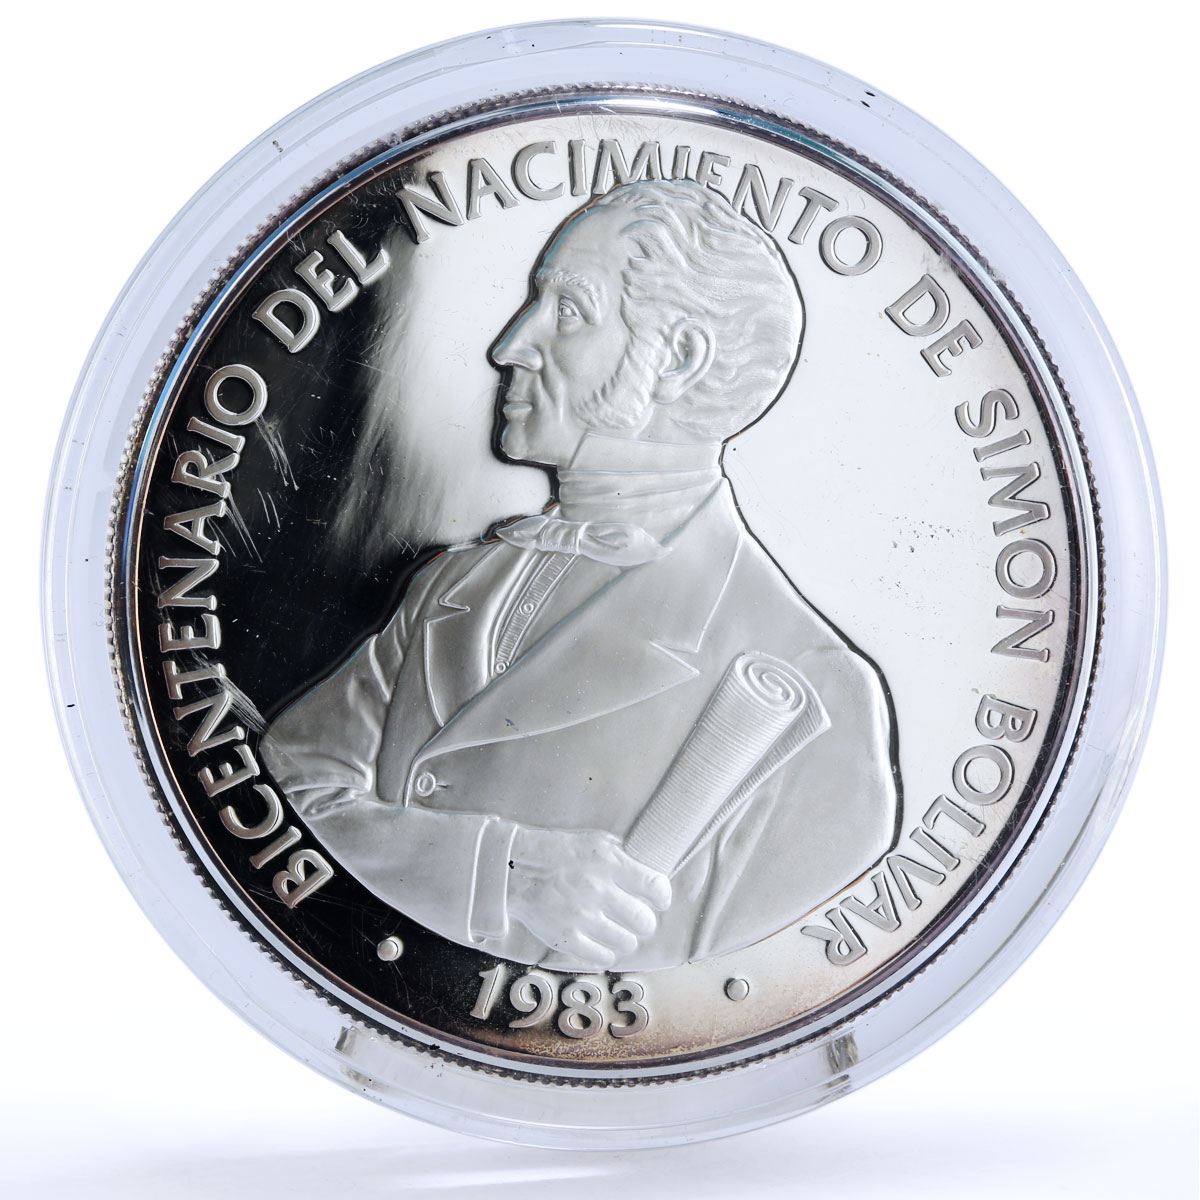 Panama 20 balboas Bicentennial of Simon Bolivar Politics silver coin 1985